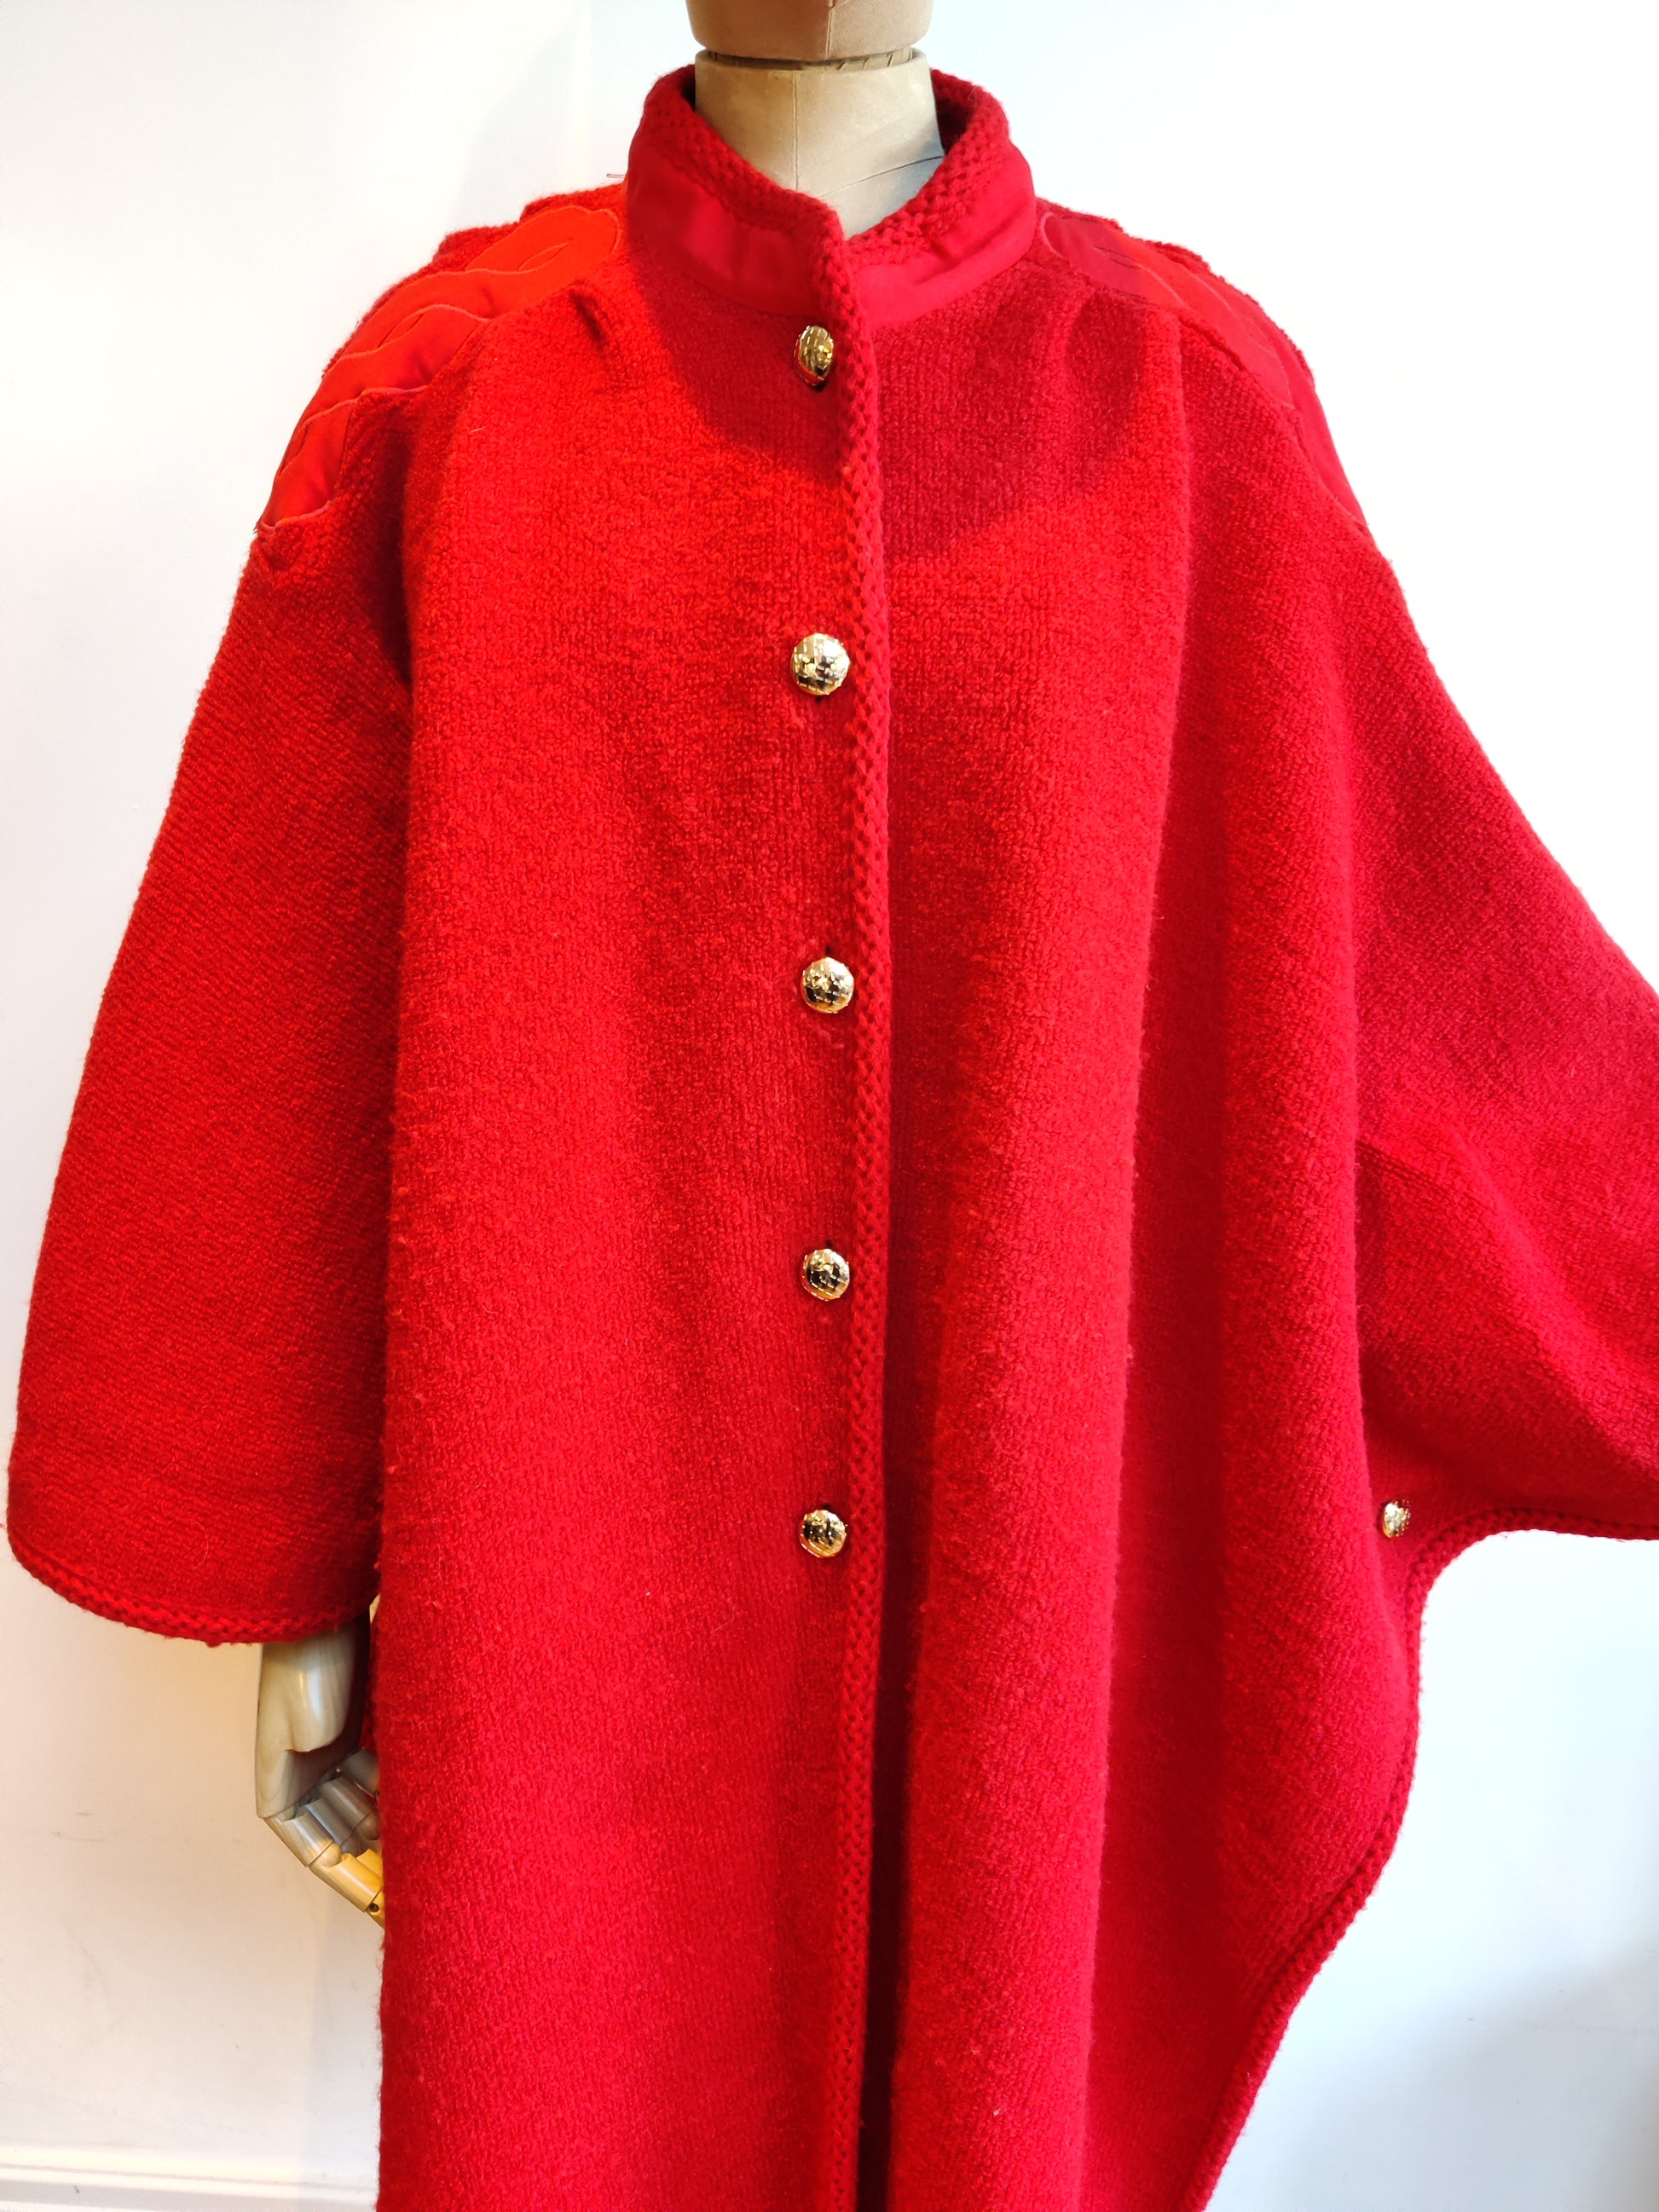 Long red vintage cape with applique shoulder trim